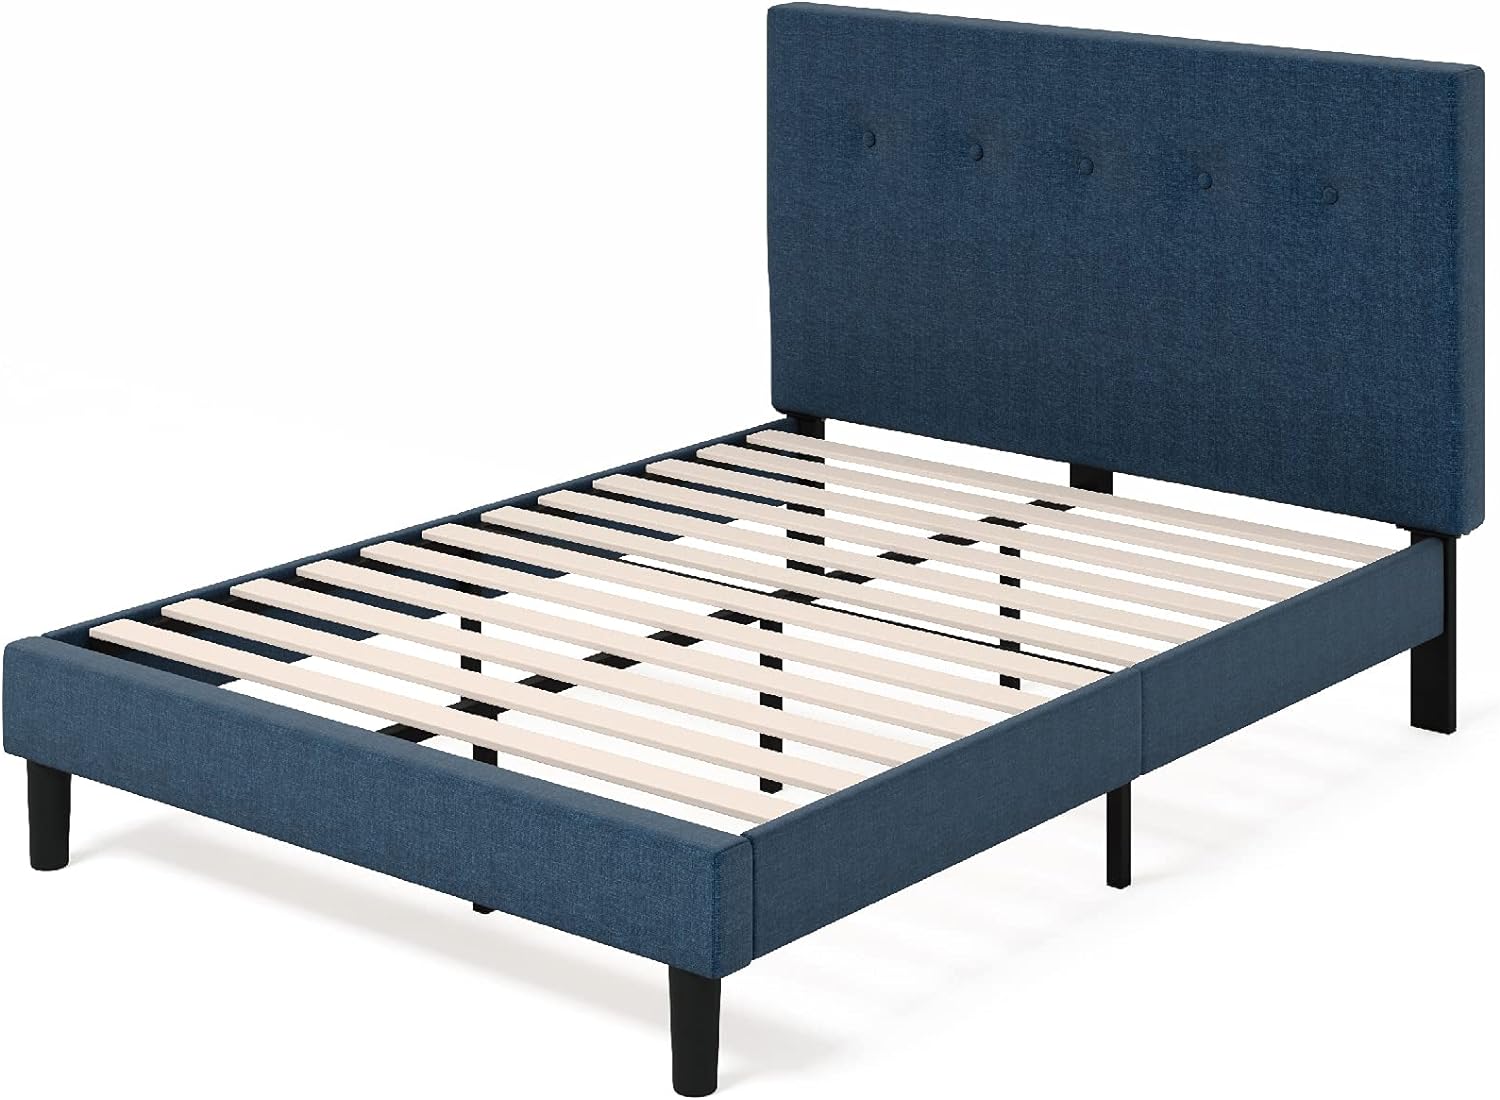 ZINUS Omkaram Upholstered Platform Bed Frame / Mattress Foundation, King - $130